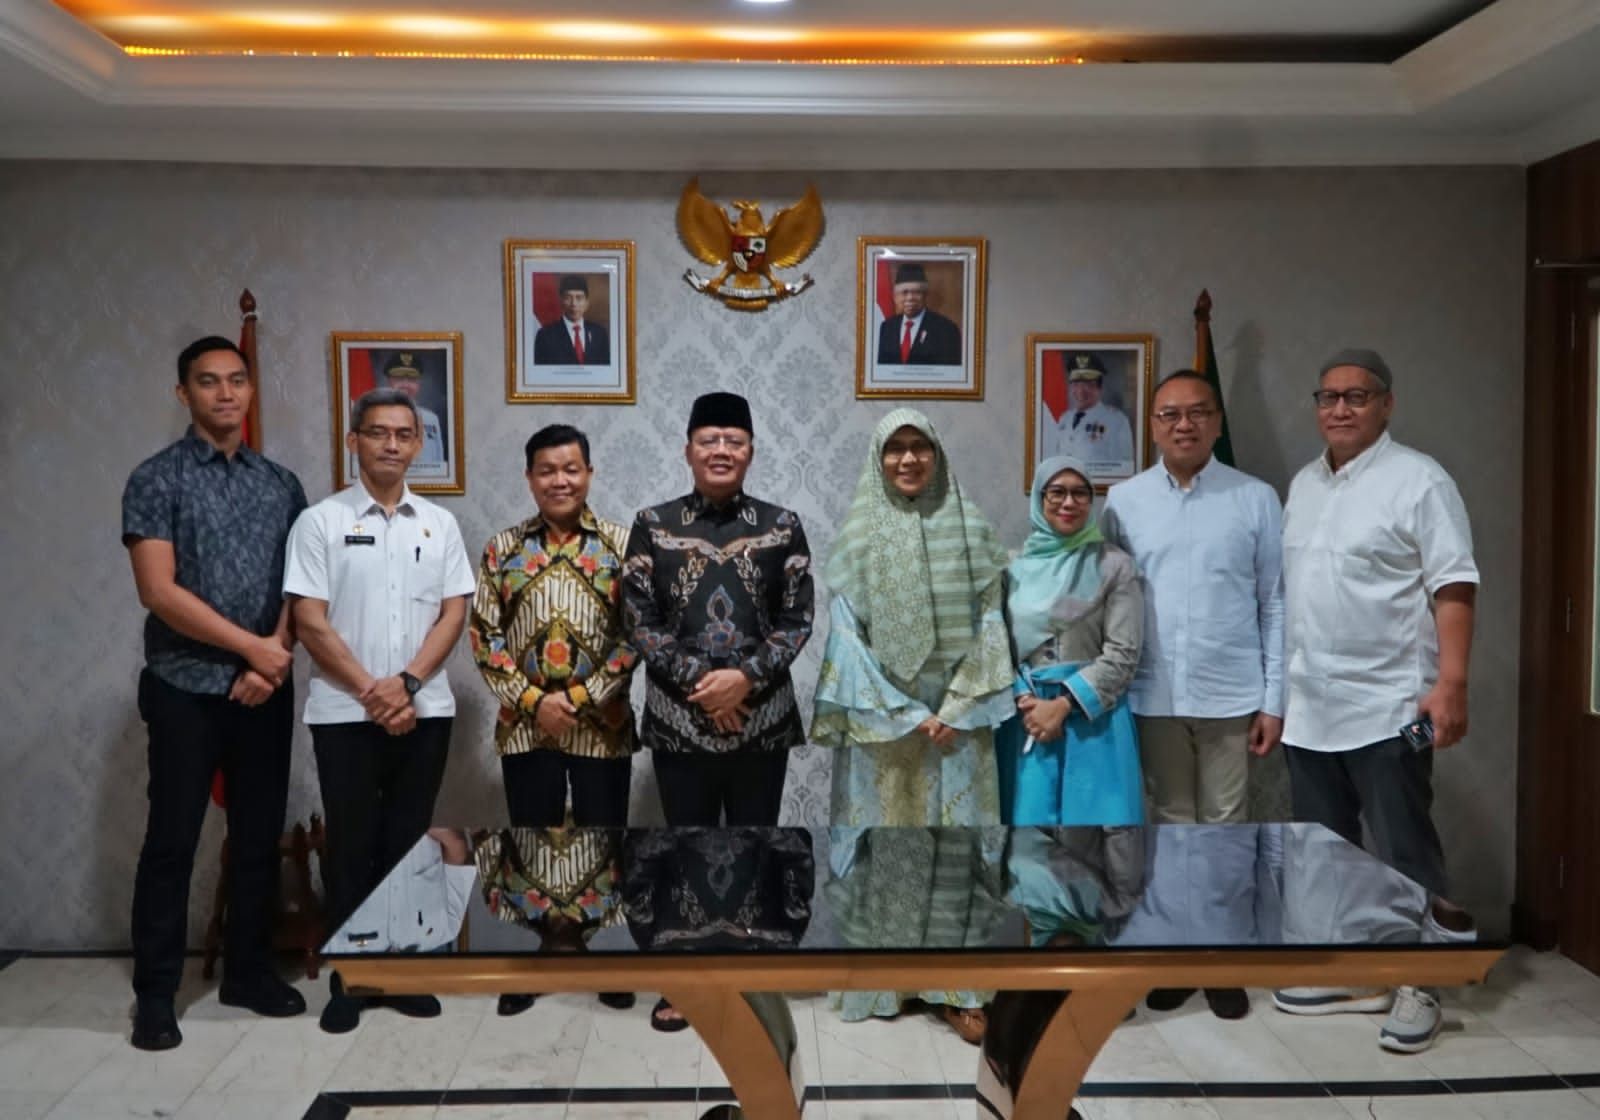    Gubernur Bengkulu Rohidin bersama Direktur Utama PT. Rumah Indonesia Kita, Maulana Hasanuddin, menandatangani kesepakatan kerjasama untuk pengembangan UMKM Bengkulu menuju pasar global (foto: Dimas/Mc/BN)